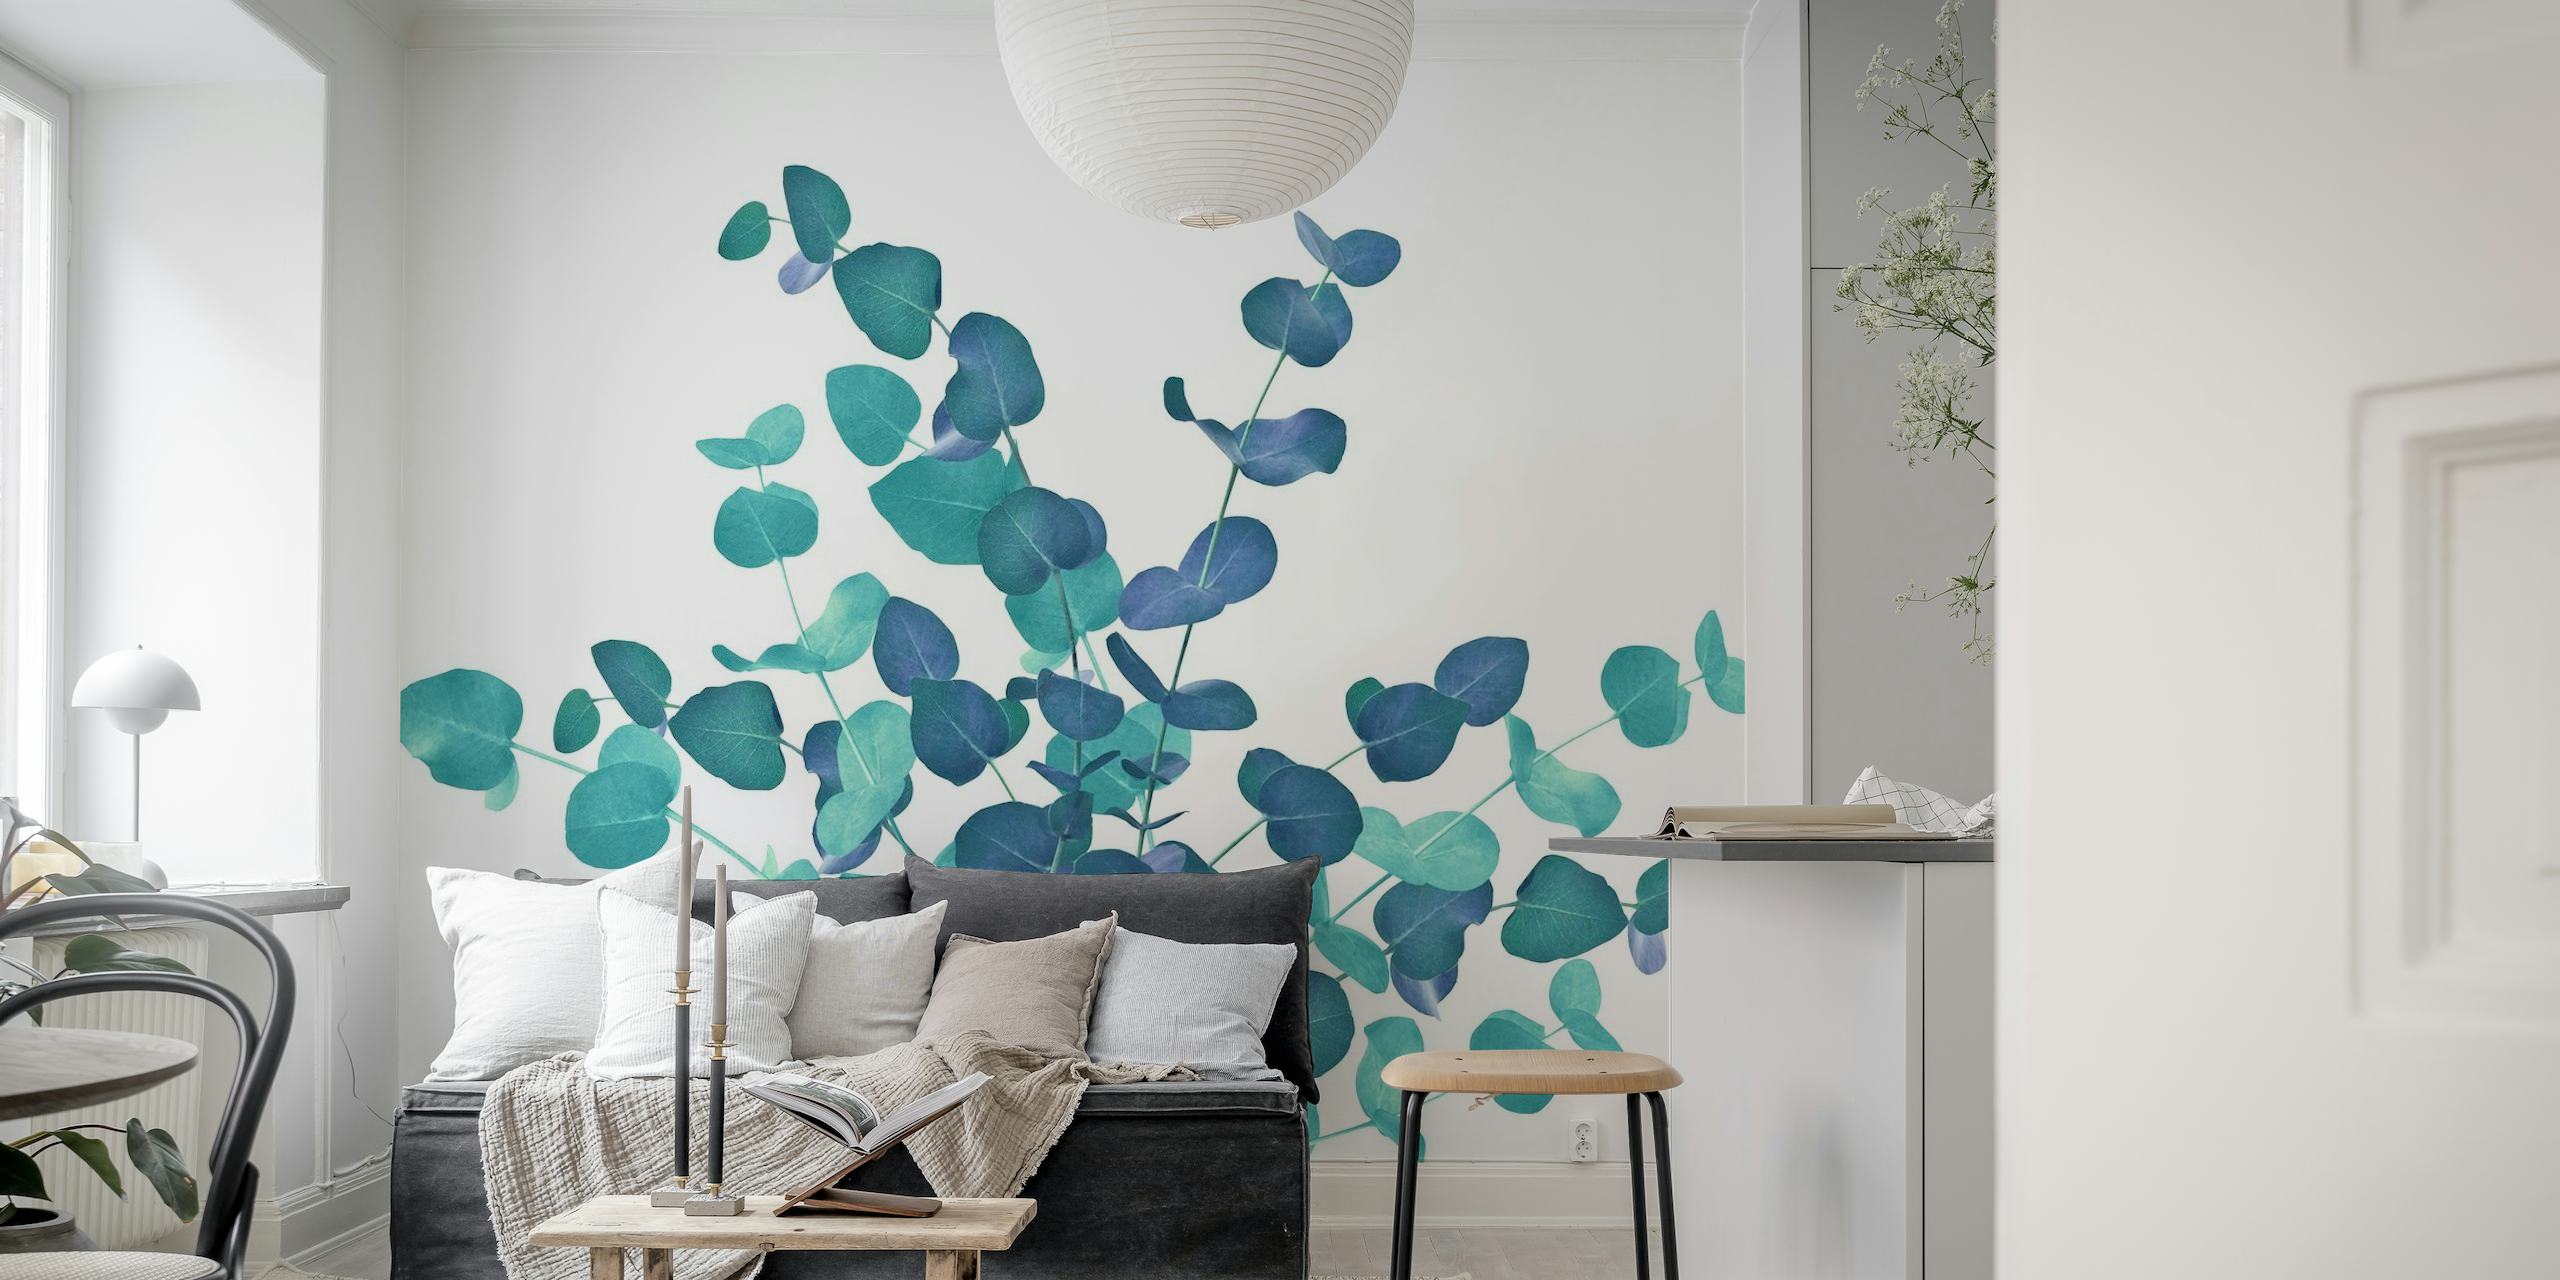 Eucalyptus blade vægmaleri i blå nuancer, hvilket skaber en fredfyldt botanisk skærm